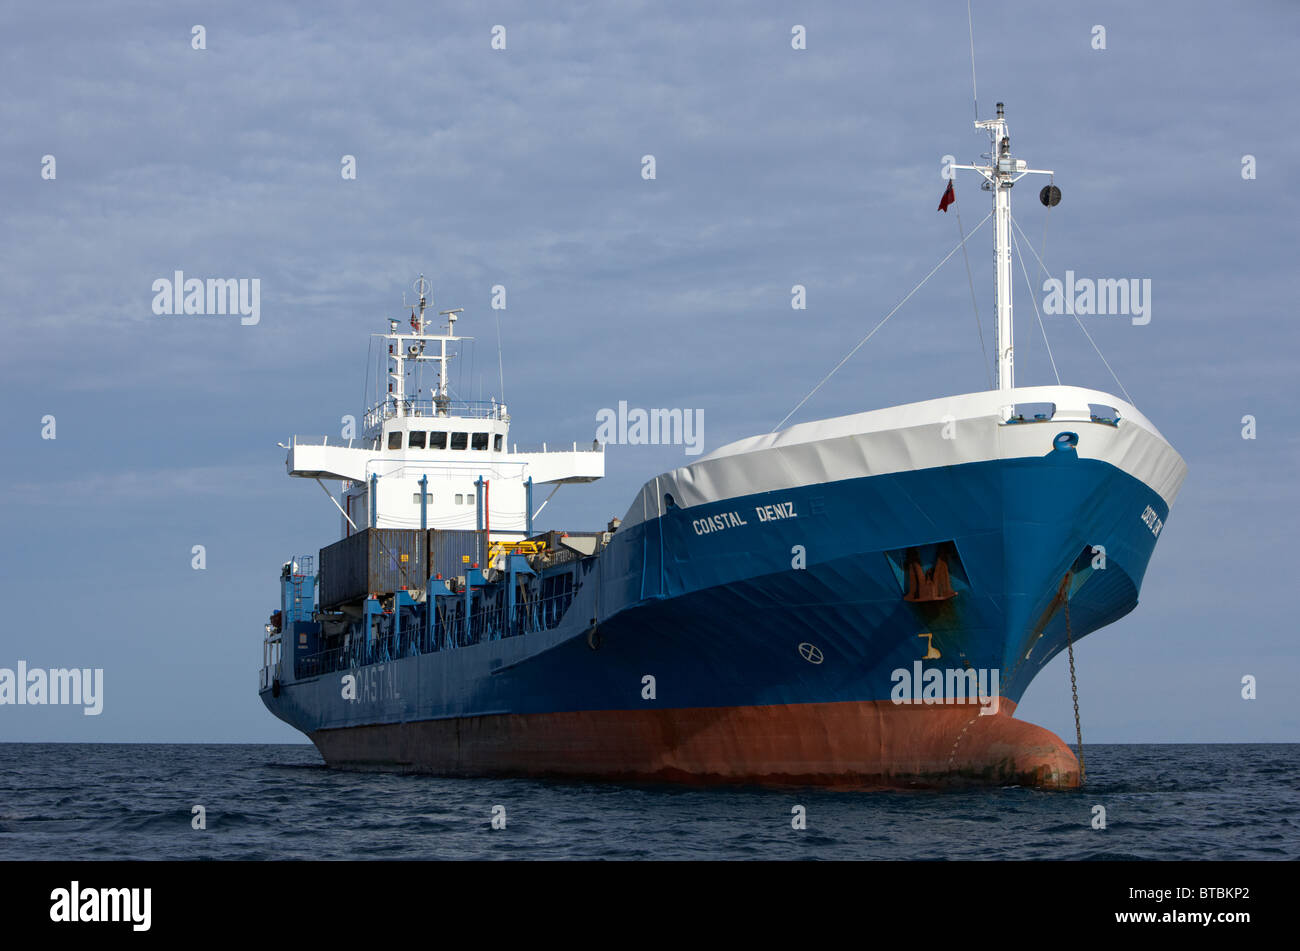 coastal deniz dry cargo hazard a major ship at anchor in coastal waters of the uk Stock Photo